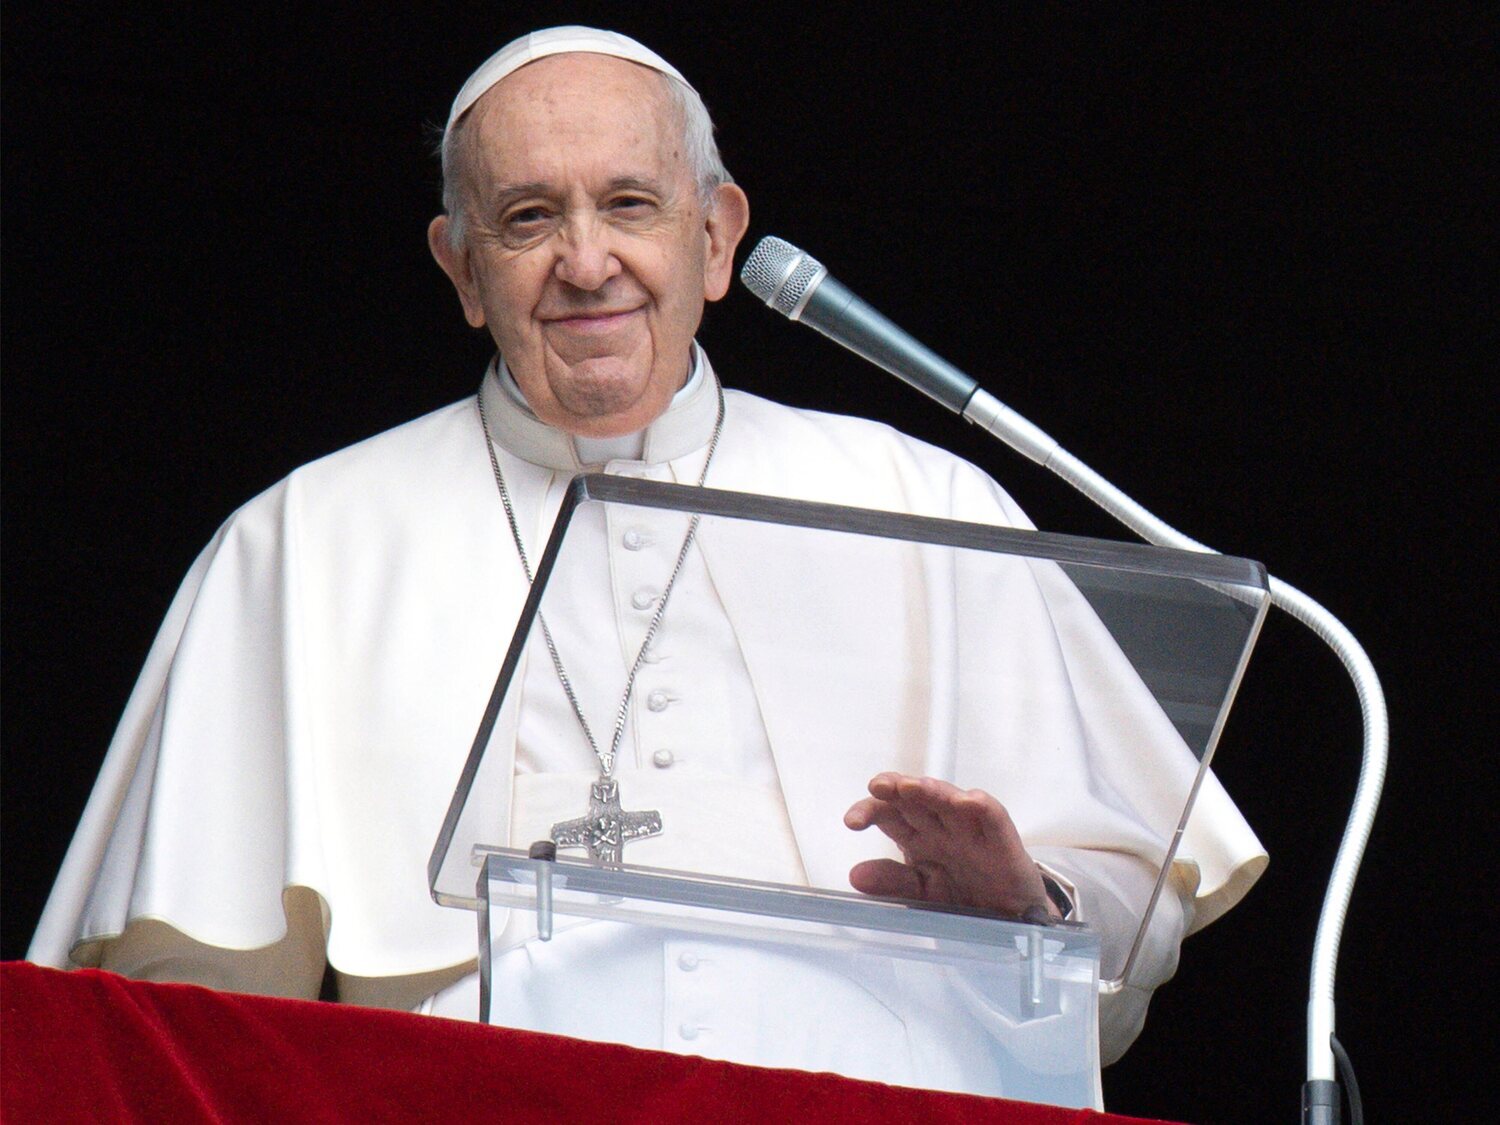 El Papa Francisco está dispuesto "revisar" el celibato en el seno de la Iglesia católica